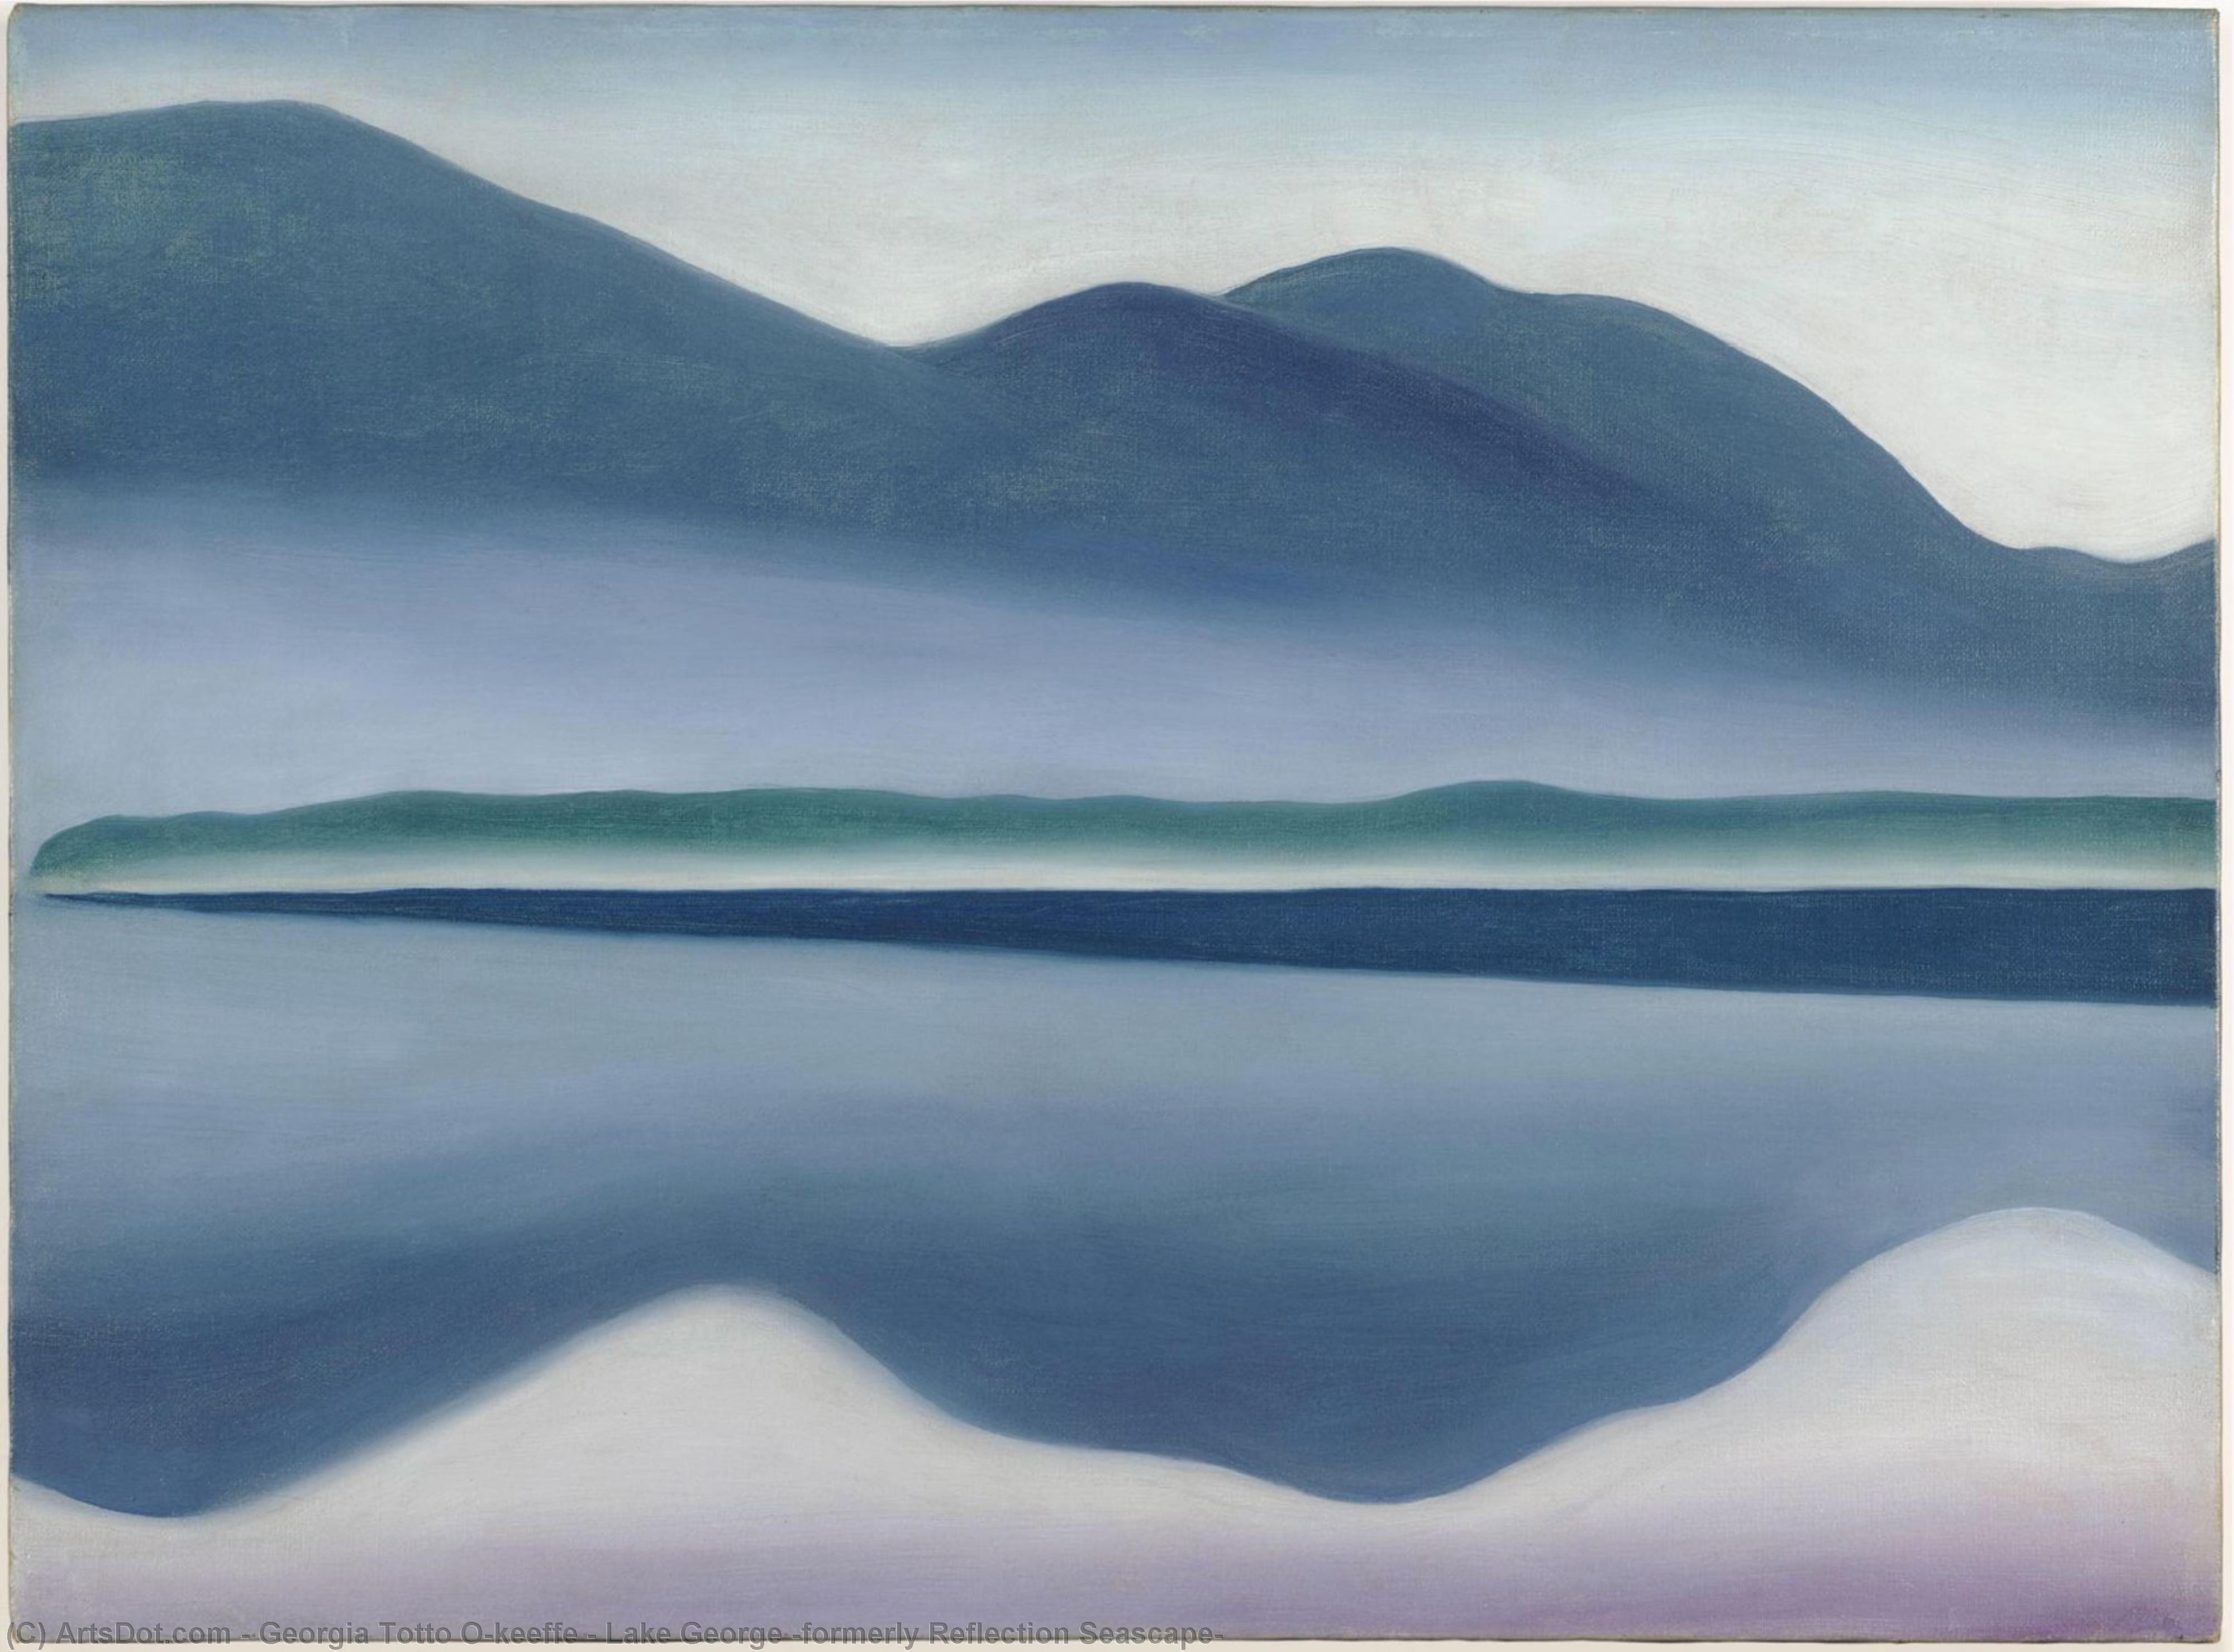 Wikioo.org - Bách khoa toàn thư về mỹ thuật - Vẽ tranh, Tác phẩm nghệ thuật Georgia Totto O'keeffe - Lake George (formerly Reflection Seascape)